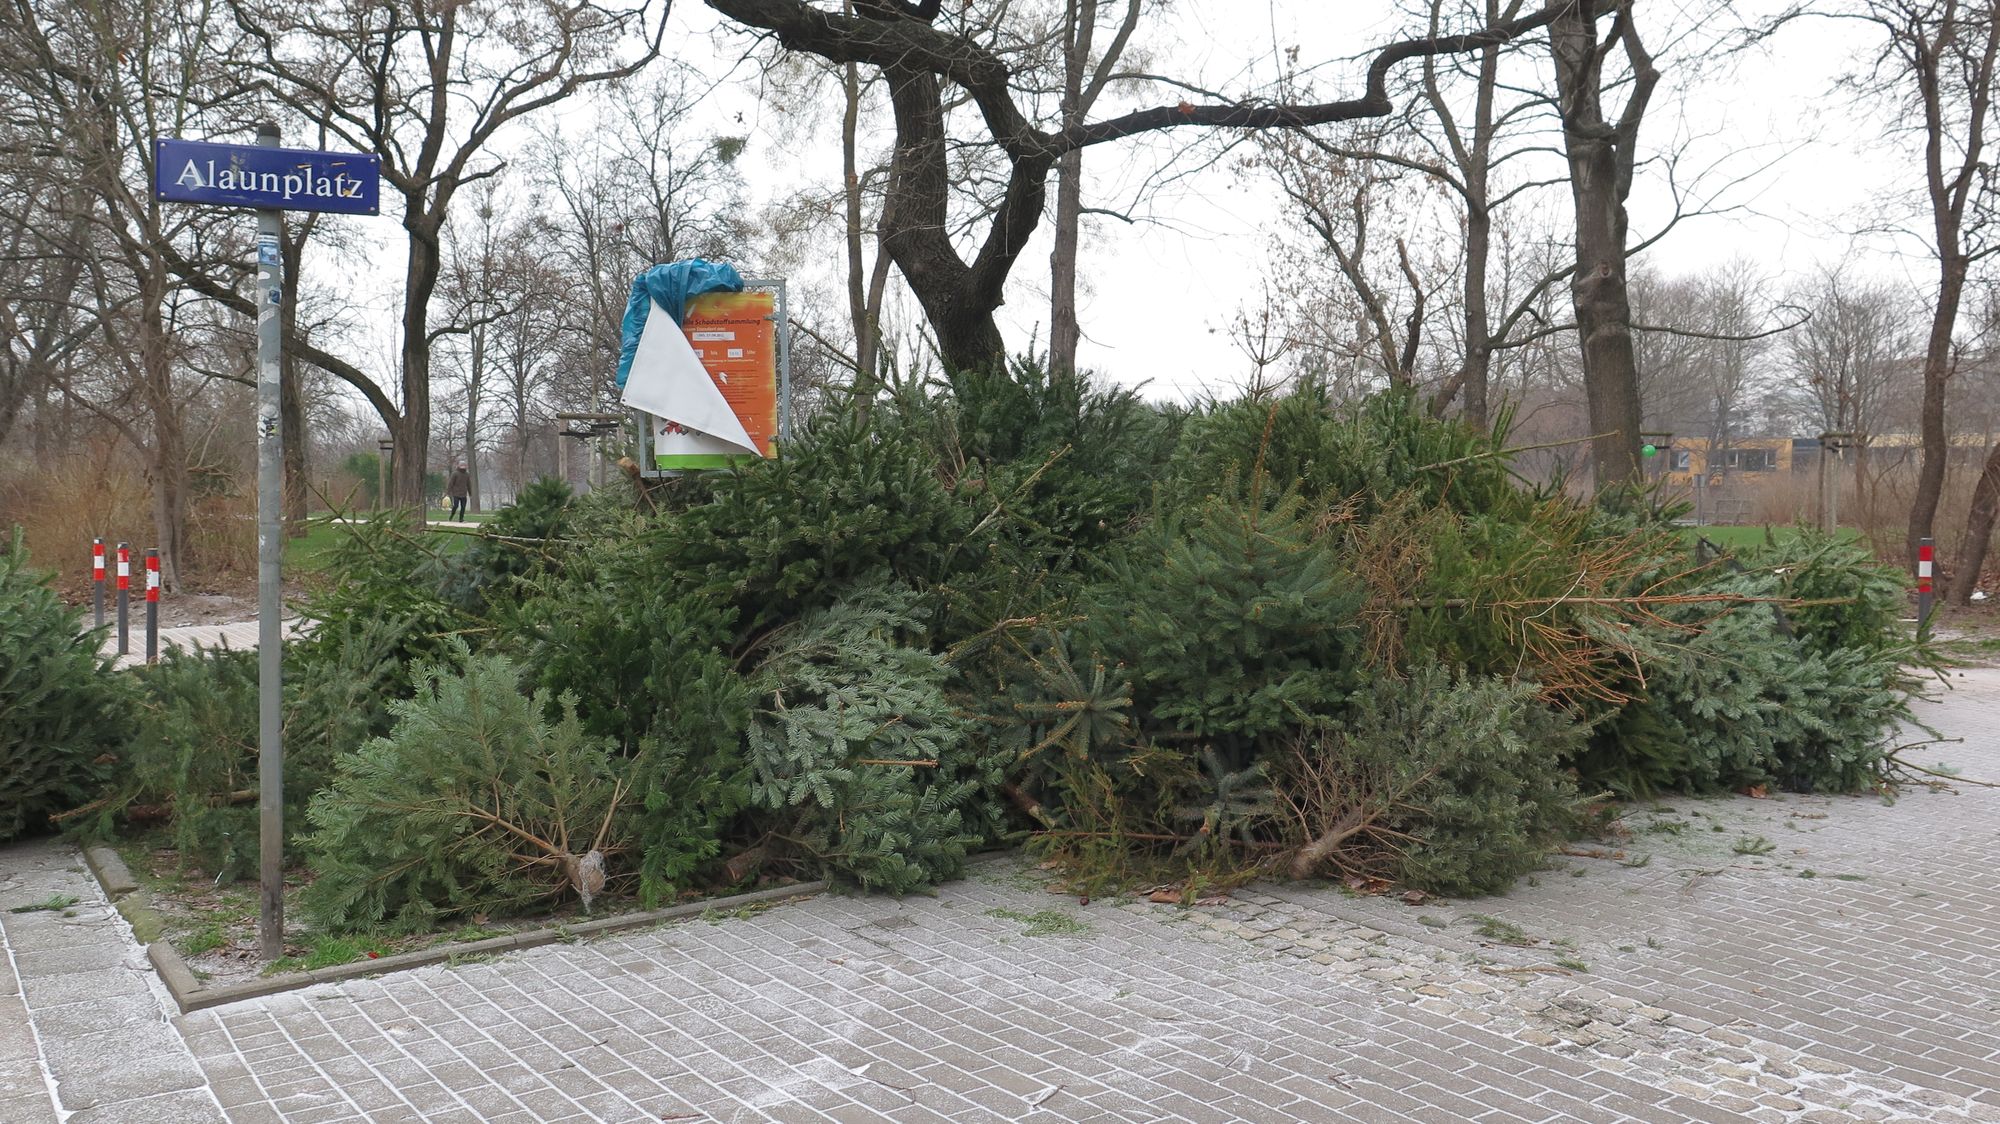 Weihnachtsbaum-Lagerstelle am Alaunplatz